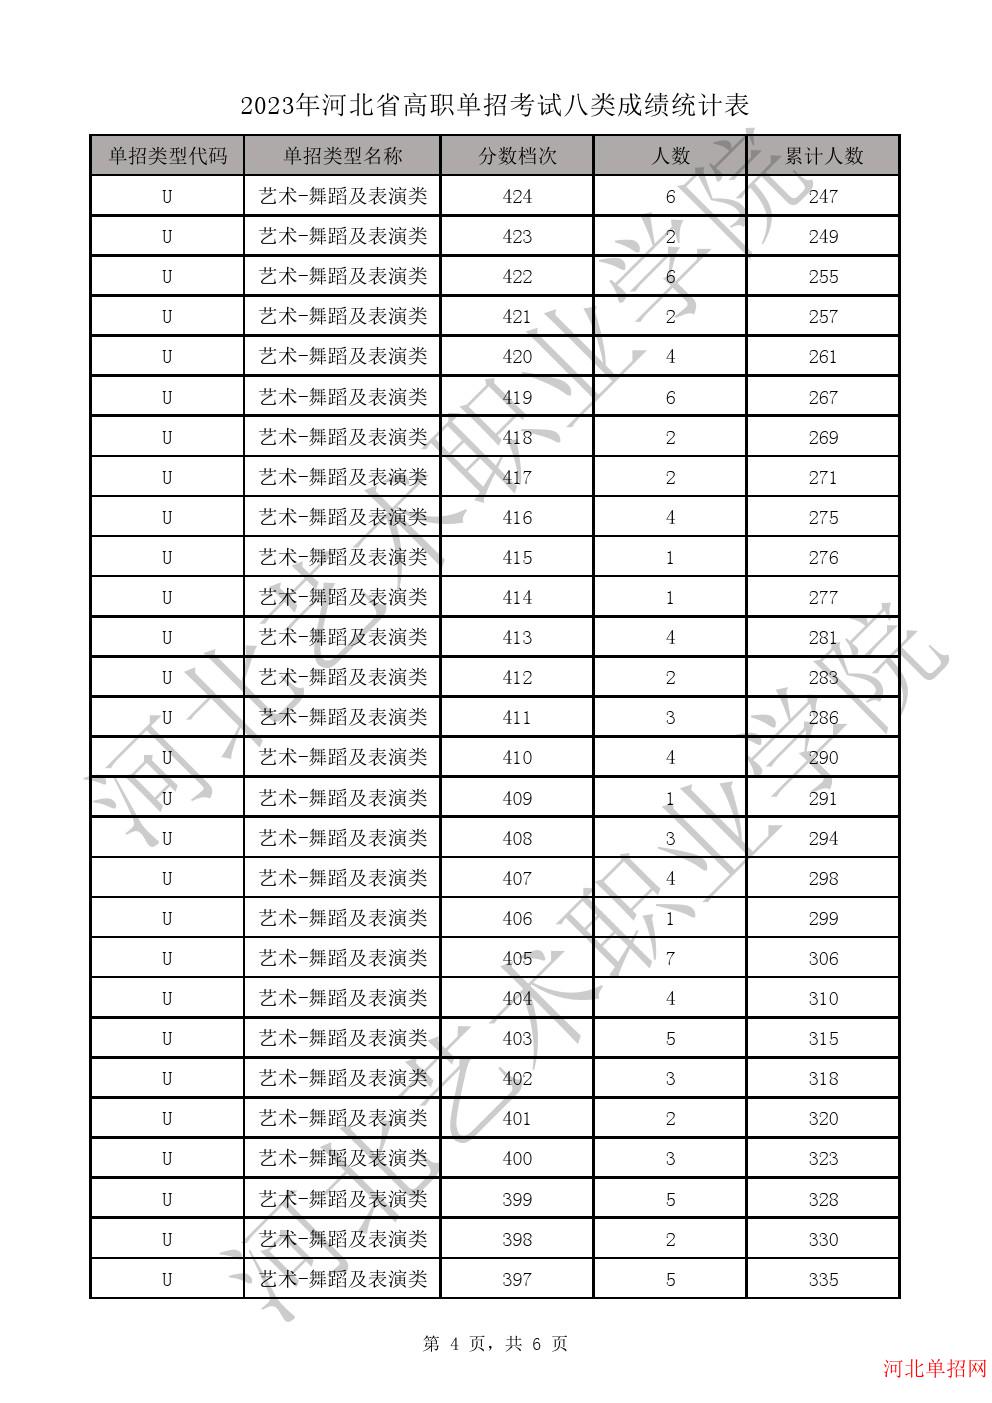 2023年河北省高职单招考试八类一分一档表-U艺术-舞蹈及表演类一分一档表 图4